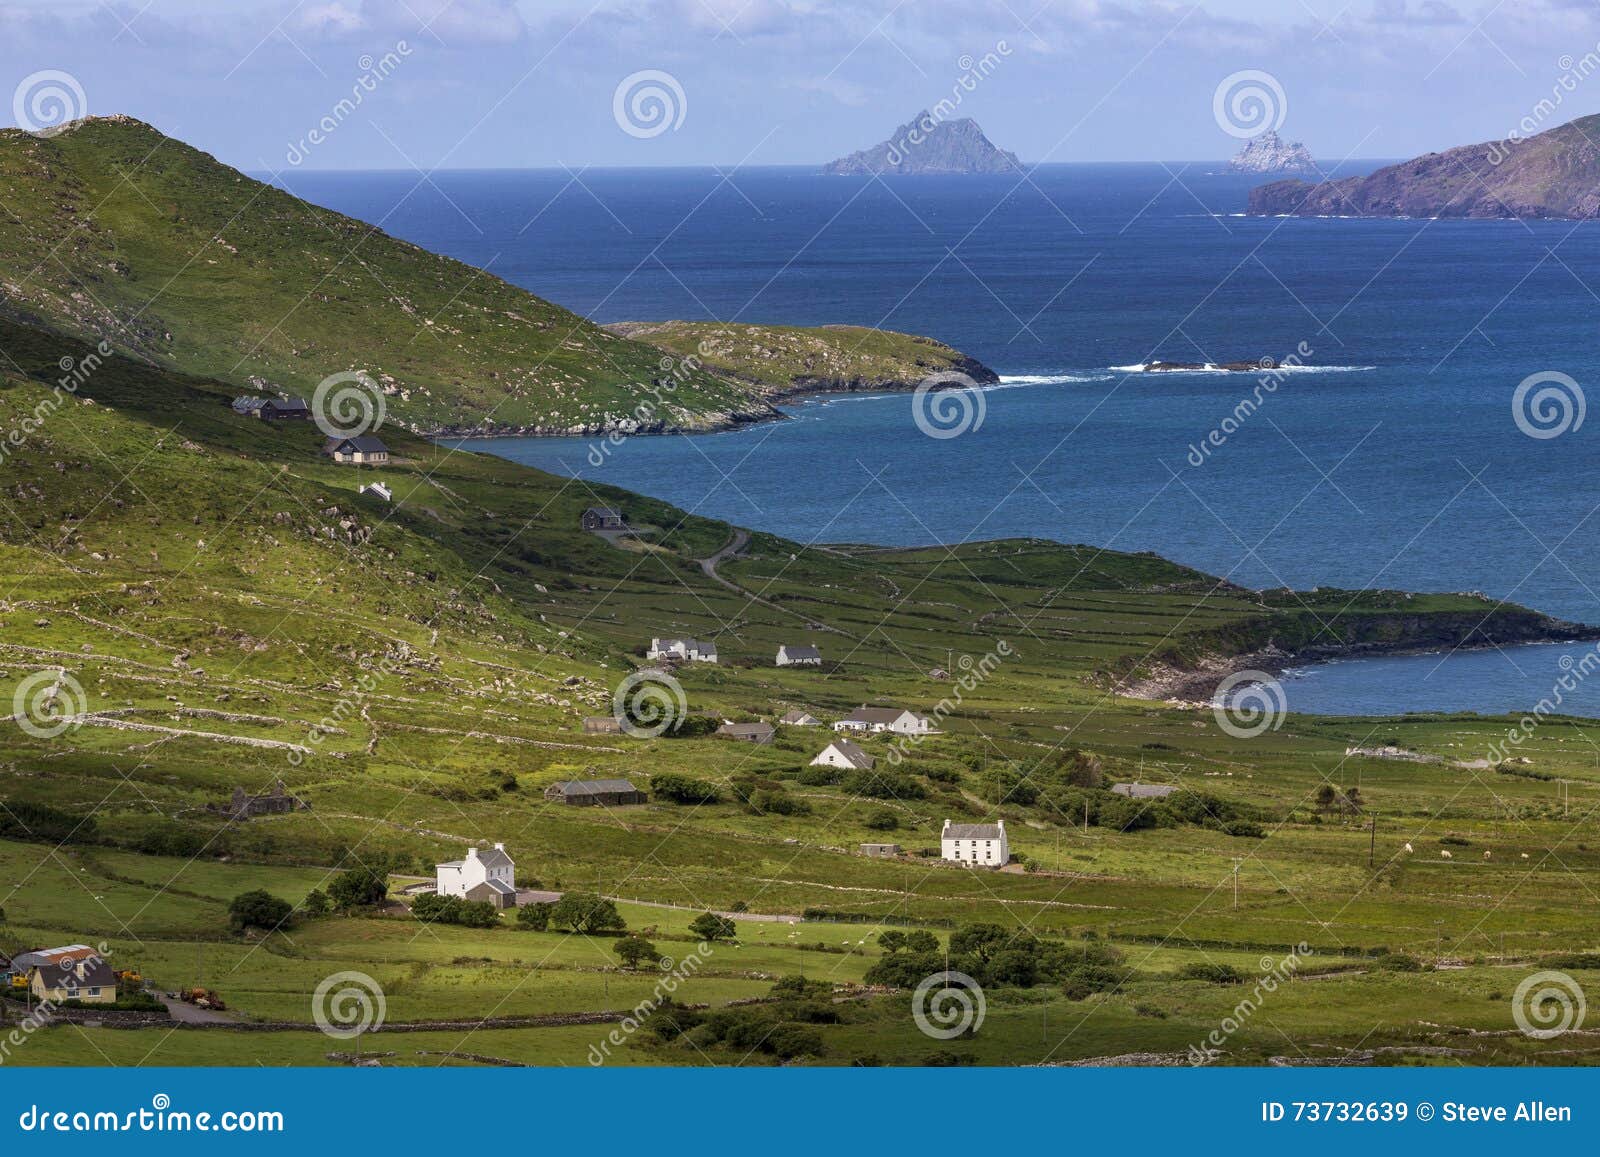 scenic coastline of the 'ring of kerry' - ireland